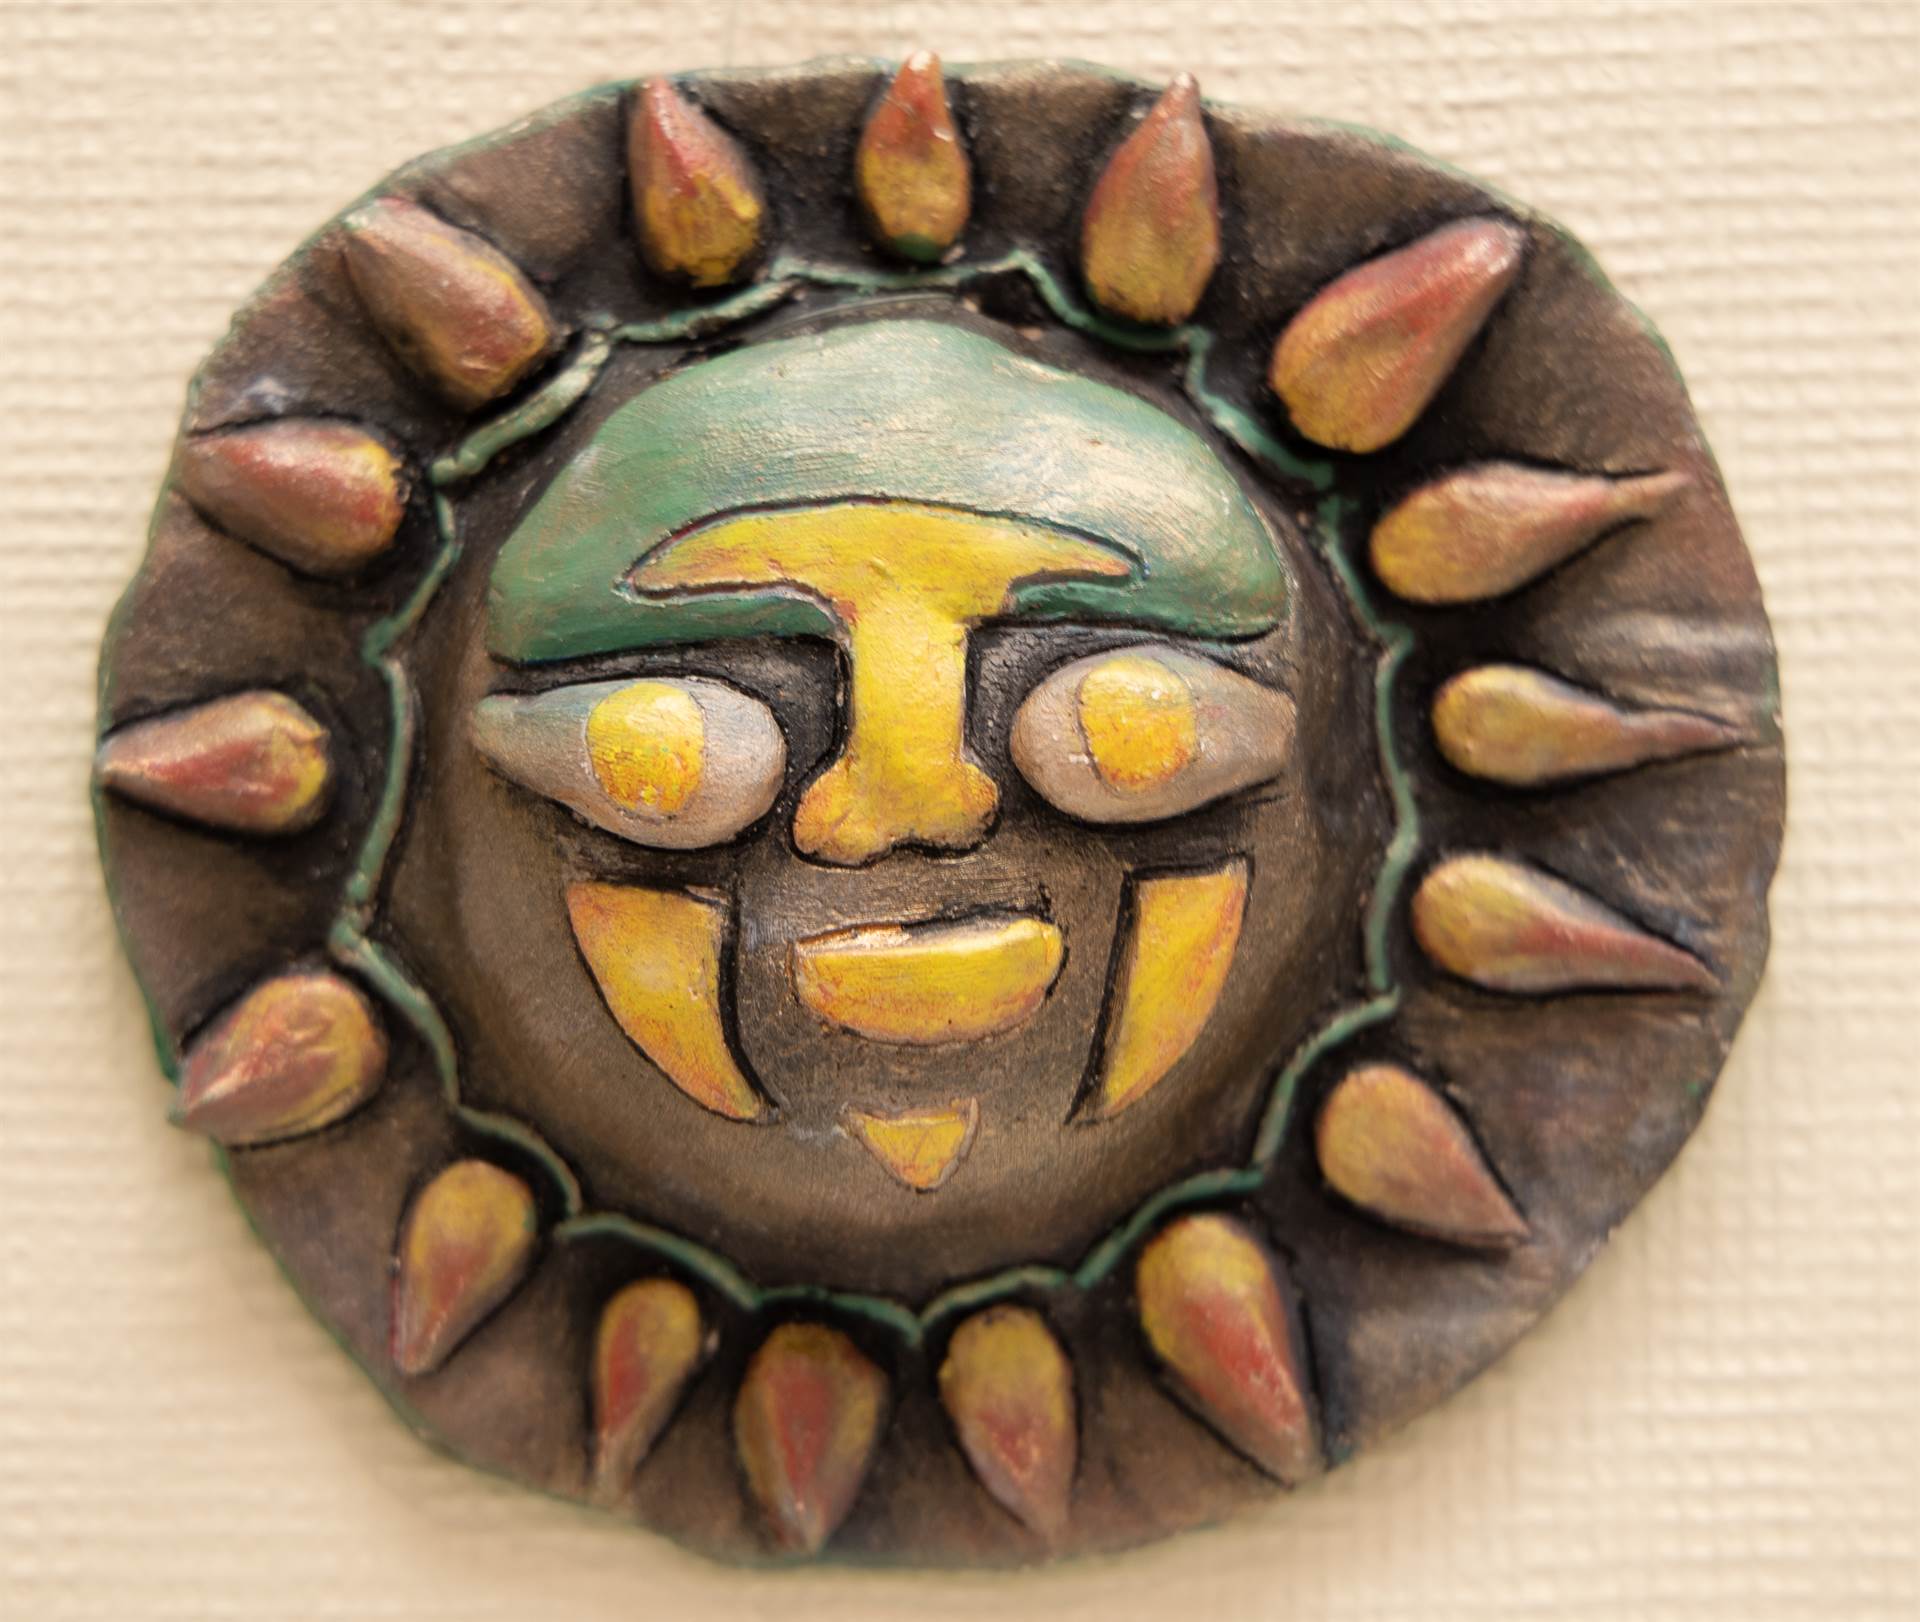 Ceramic Sun